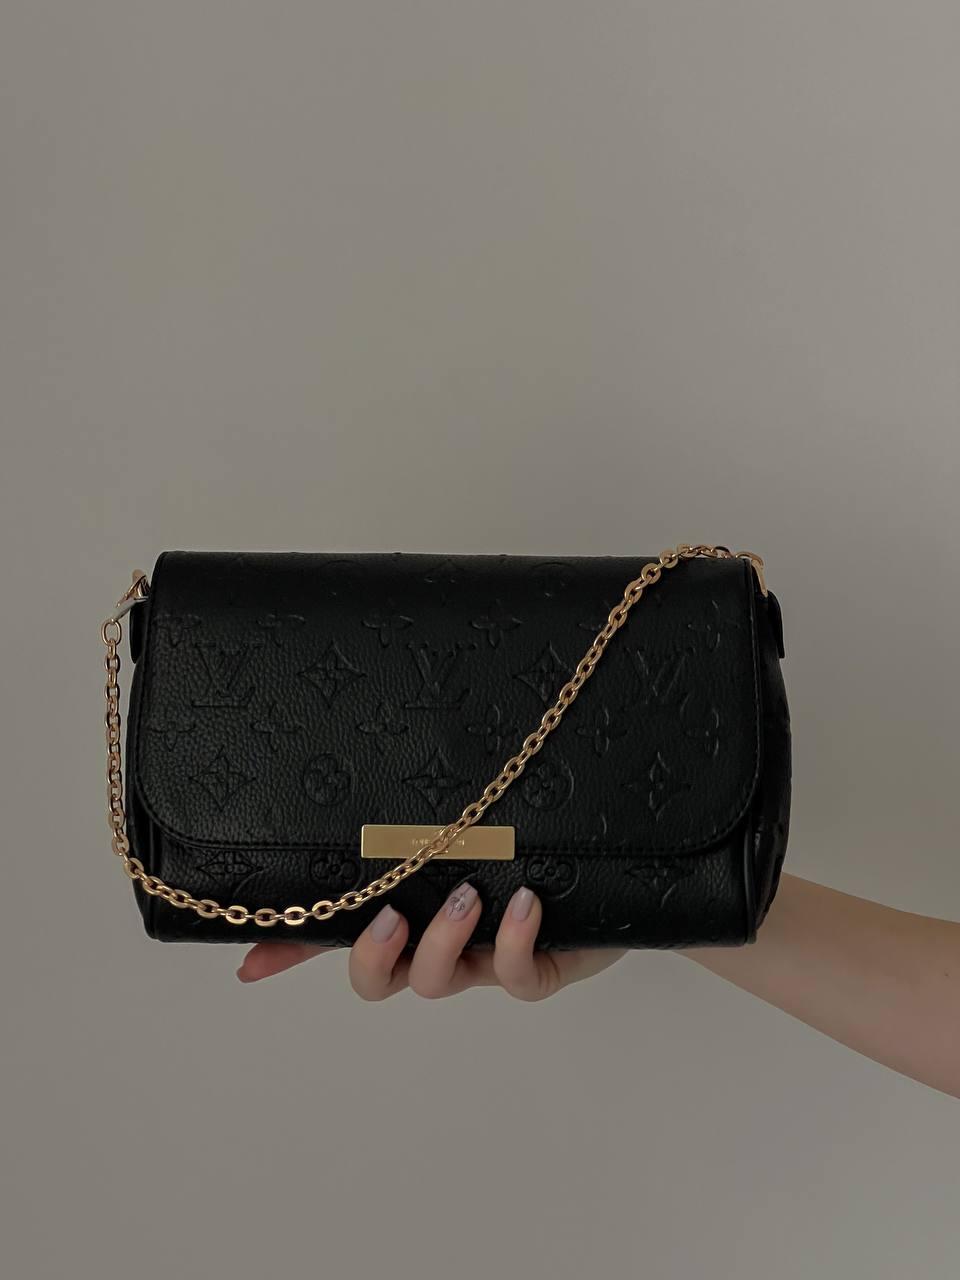 Жіноча сумка з екошкіри Луї Віттон Louis Vuitton LV молодіжна, брендова сумка